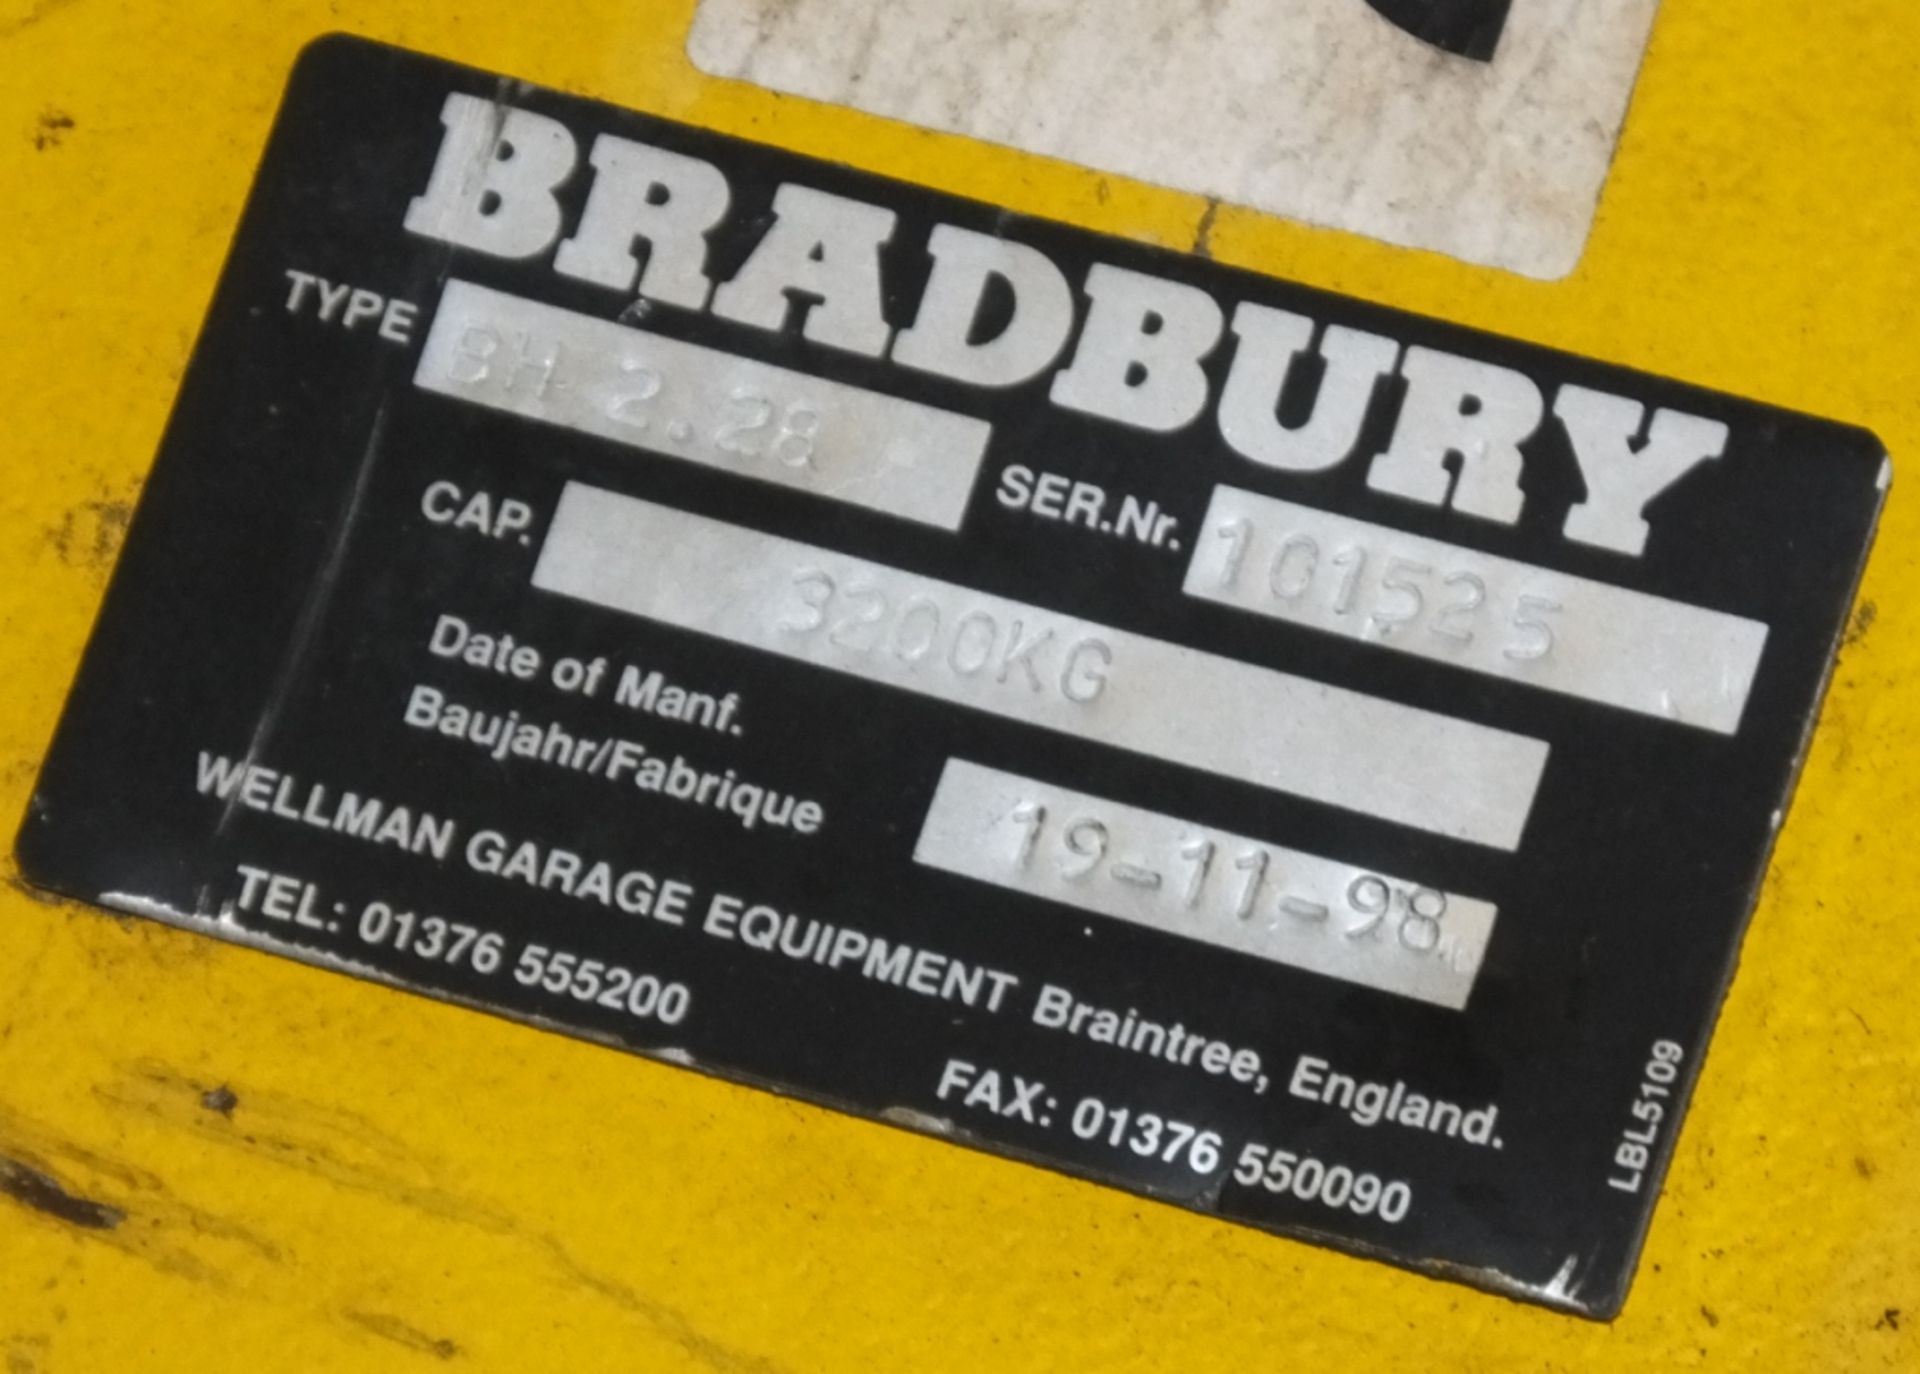 Bradbury BH 2.28 - 3200kg 2 post vehicle lift - Image 3 of 4